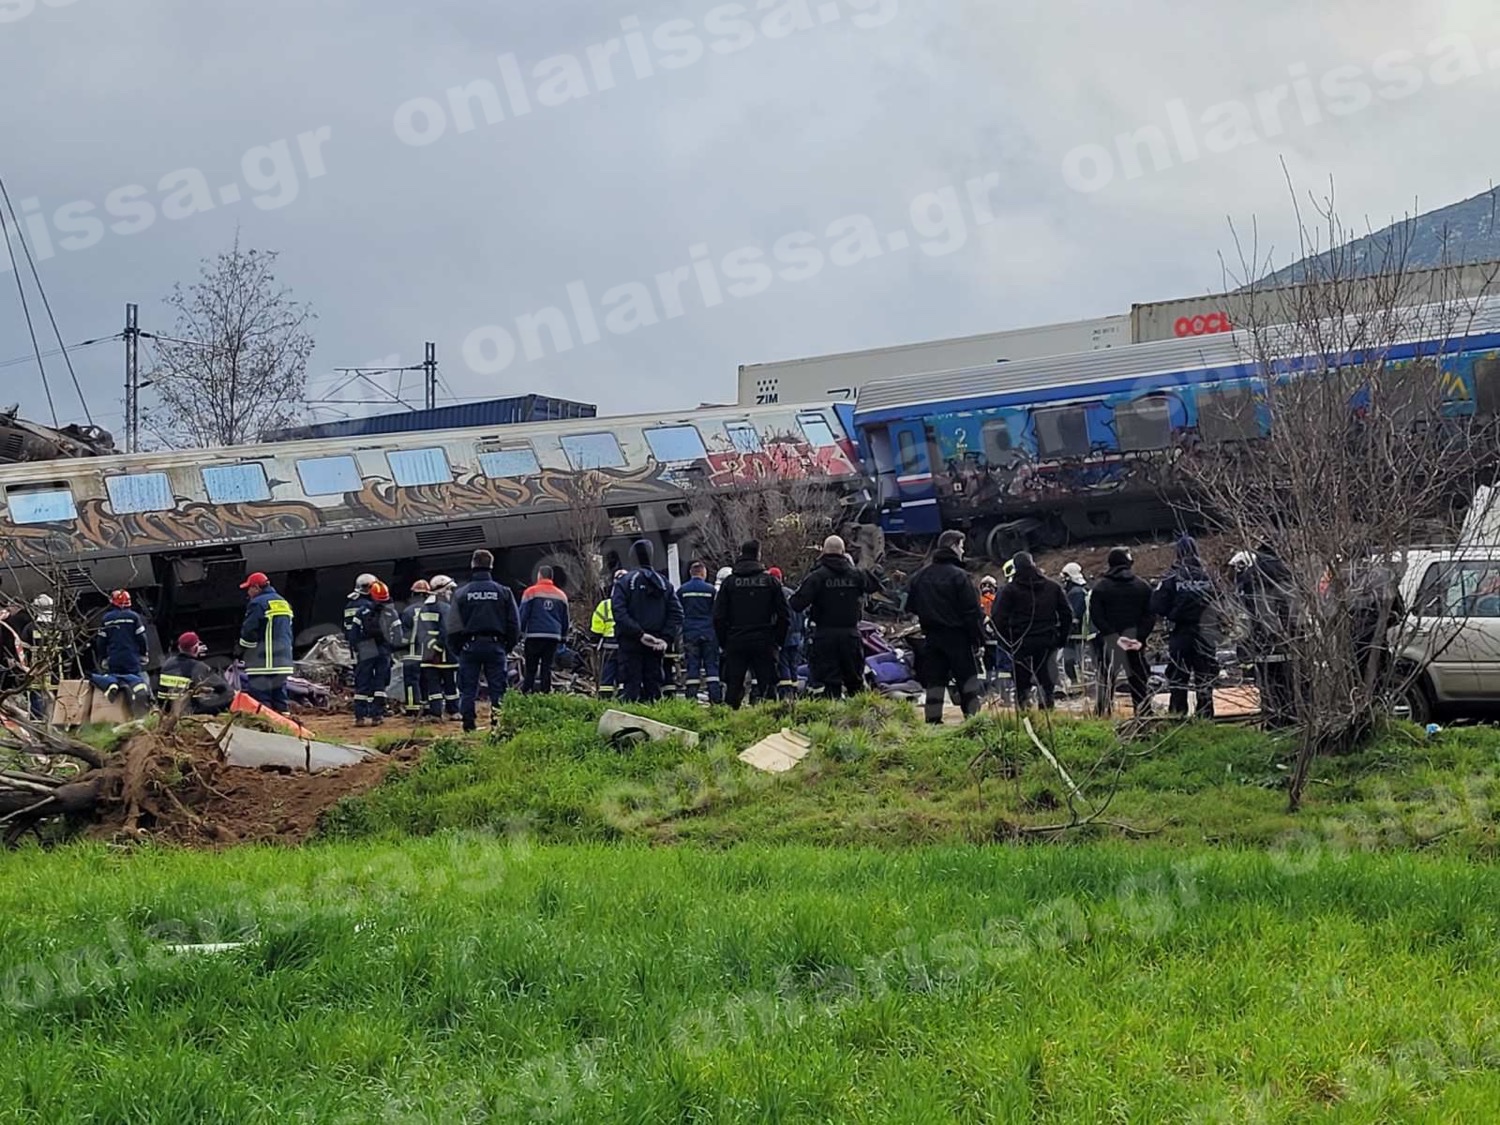 Σύγκρουση τρένων στα Τέμπη: Τριήμερο εθνικό πένθος με απόφαση Μητσοτάκη